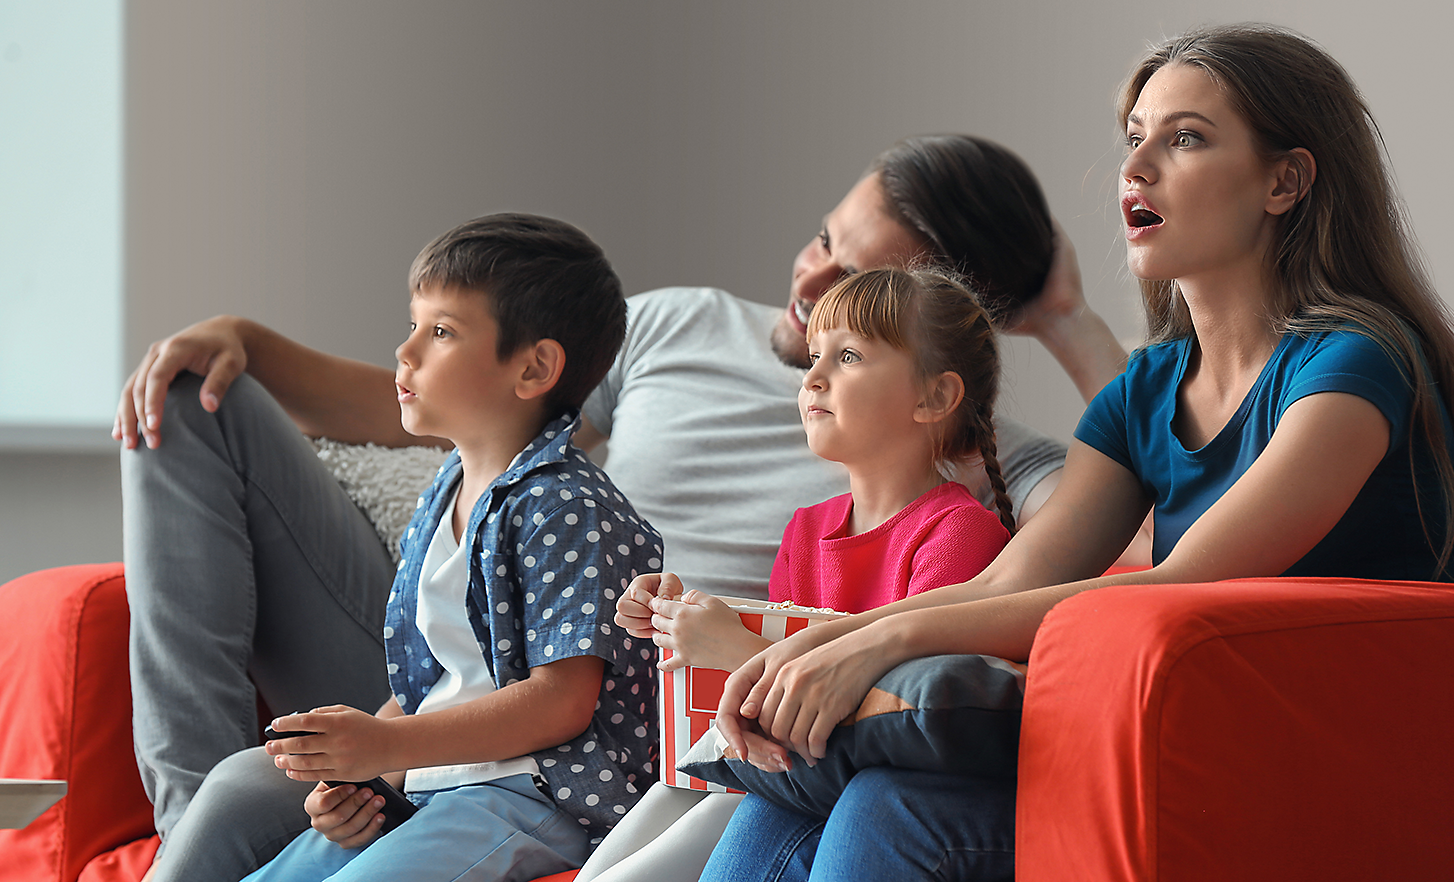 משפחה בת ארבע נפשות על ספה, מרותקת לצפייה בטלוויזיה